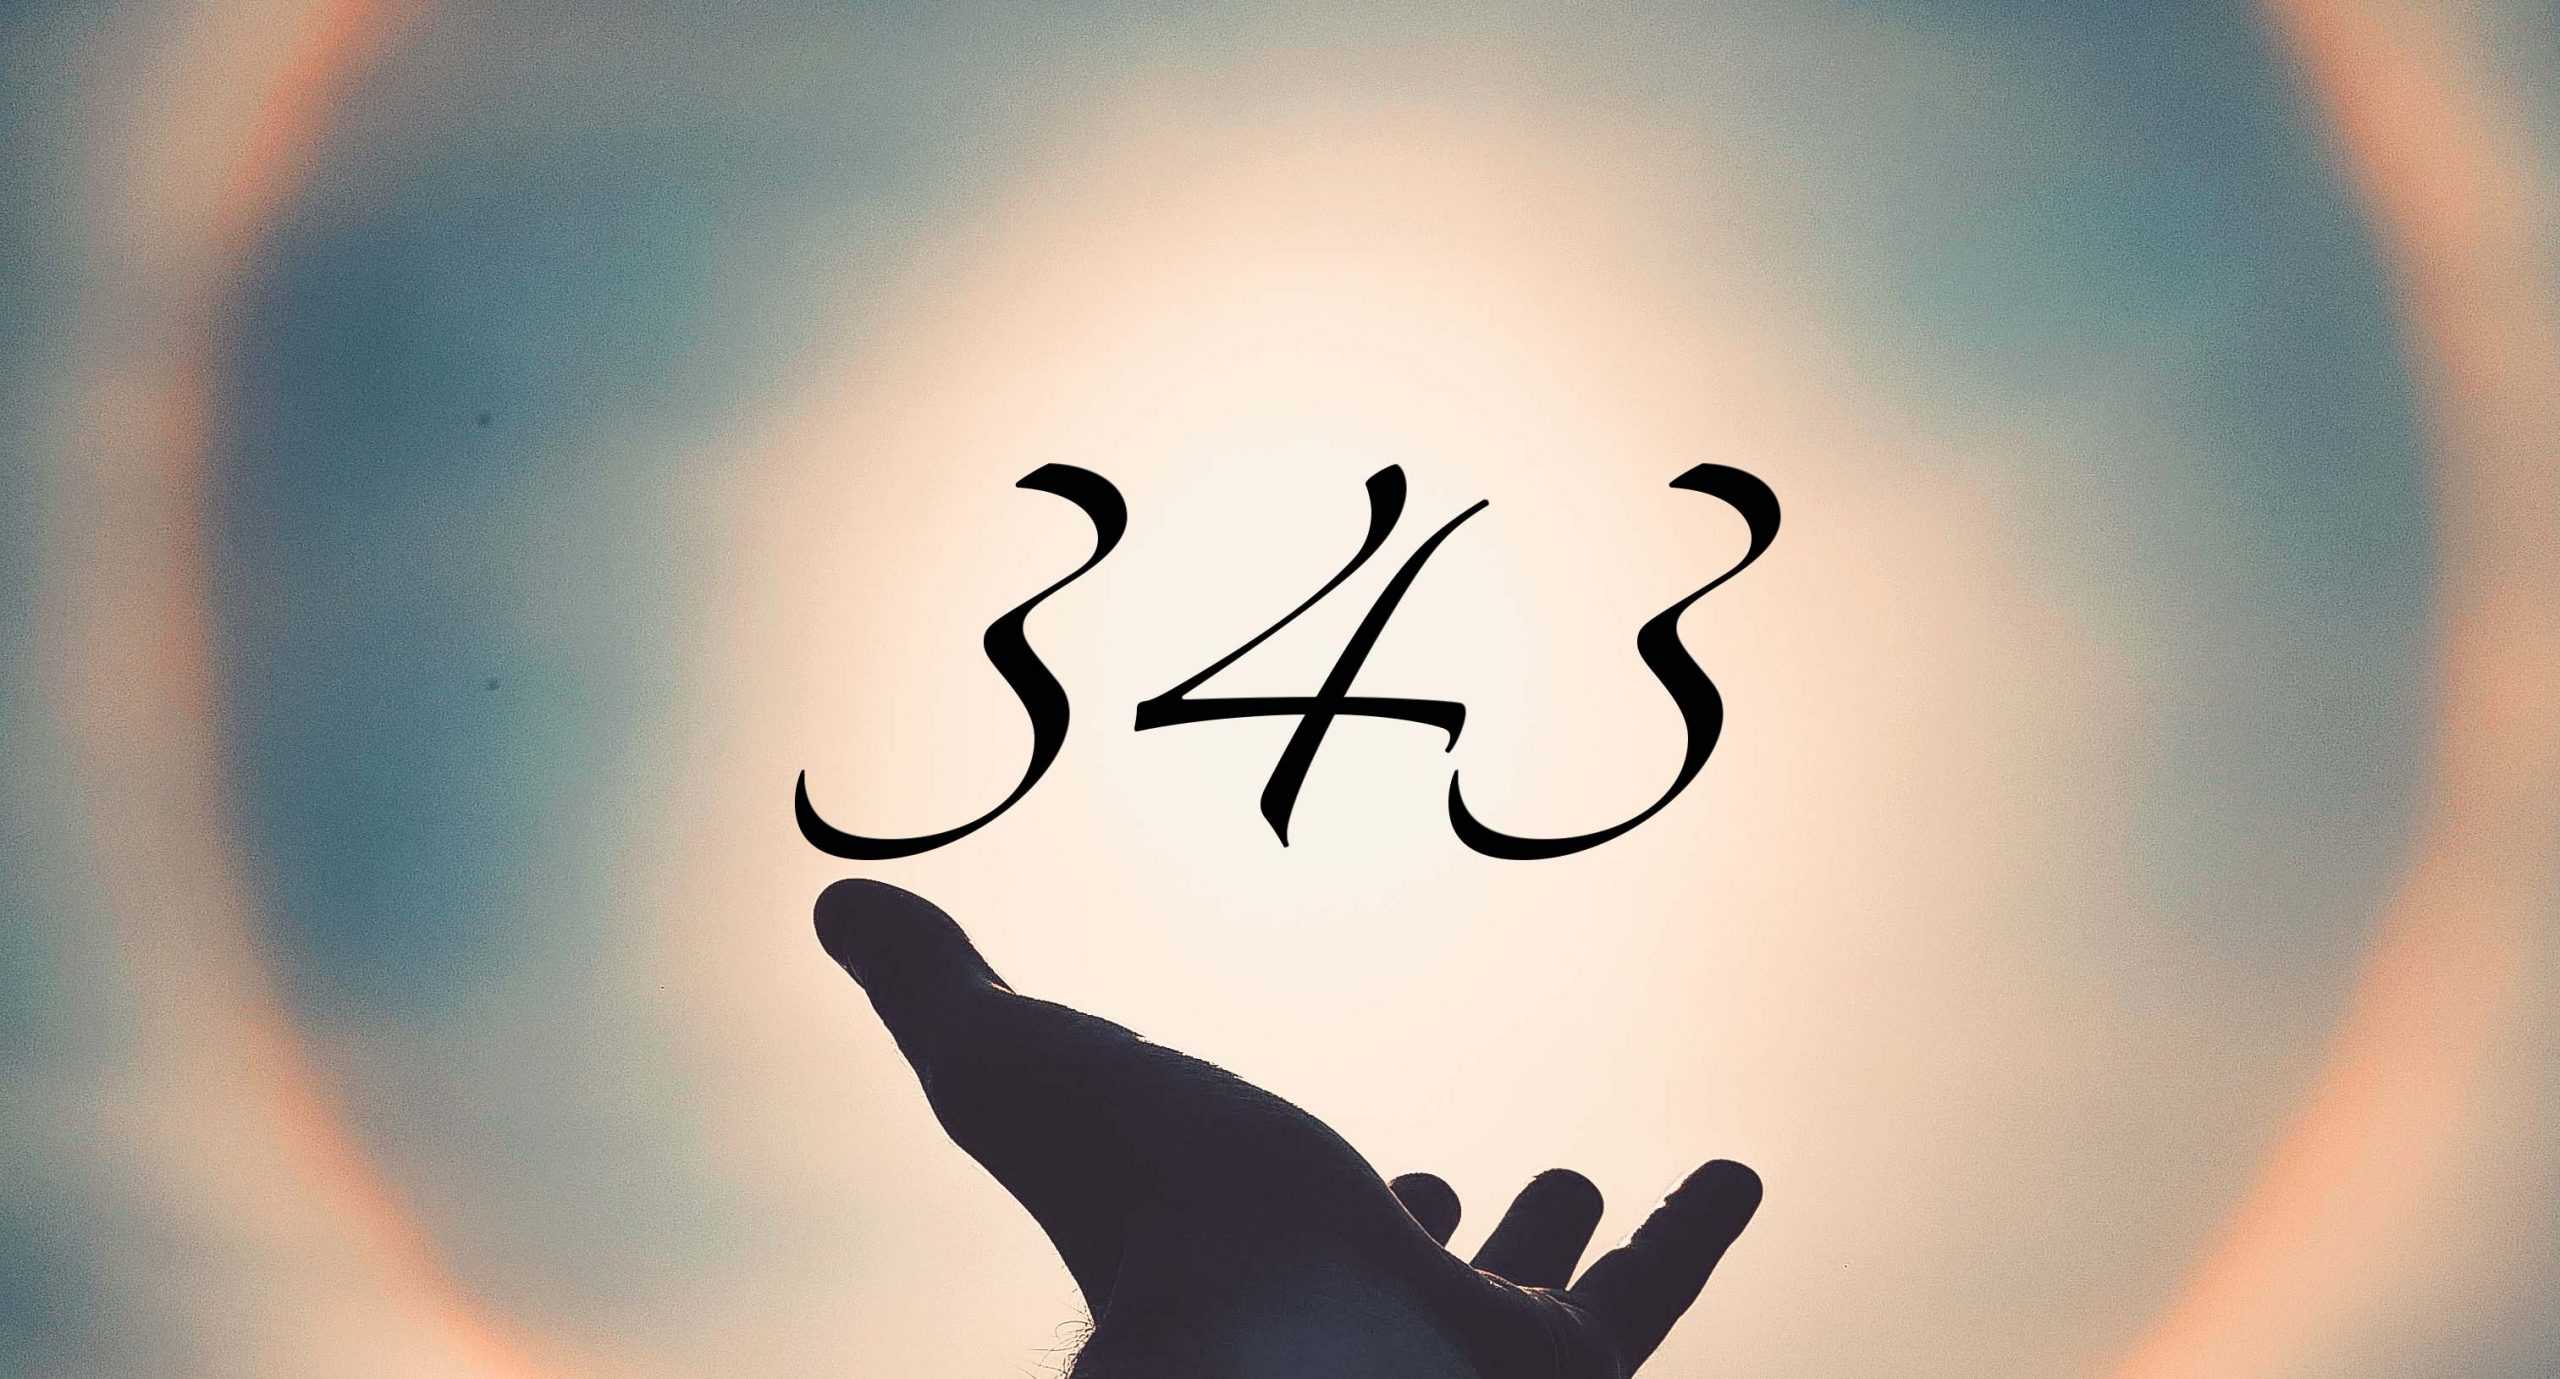 Signification du nombre 343